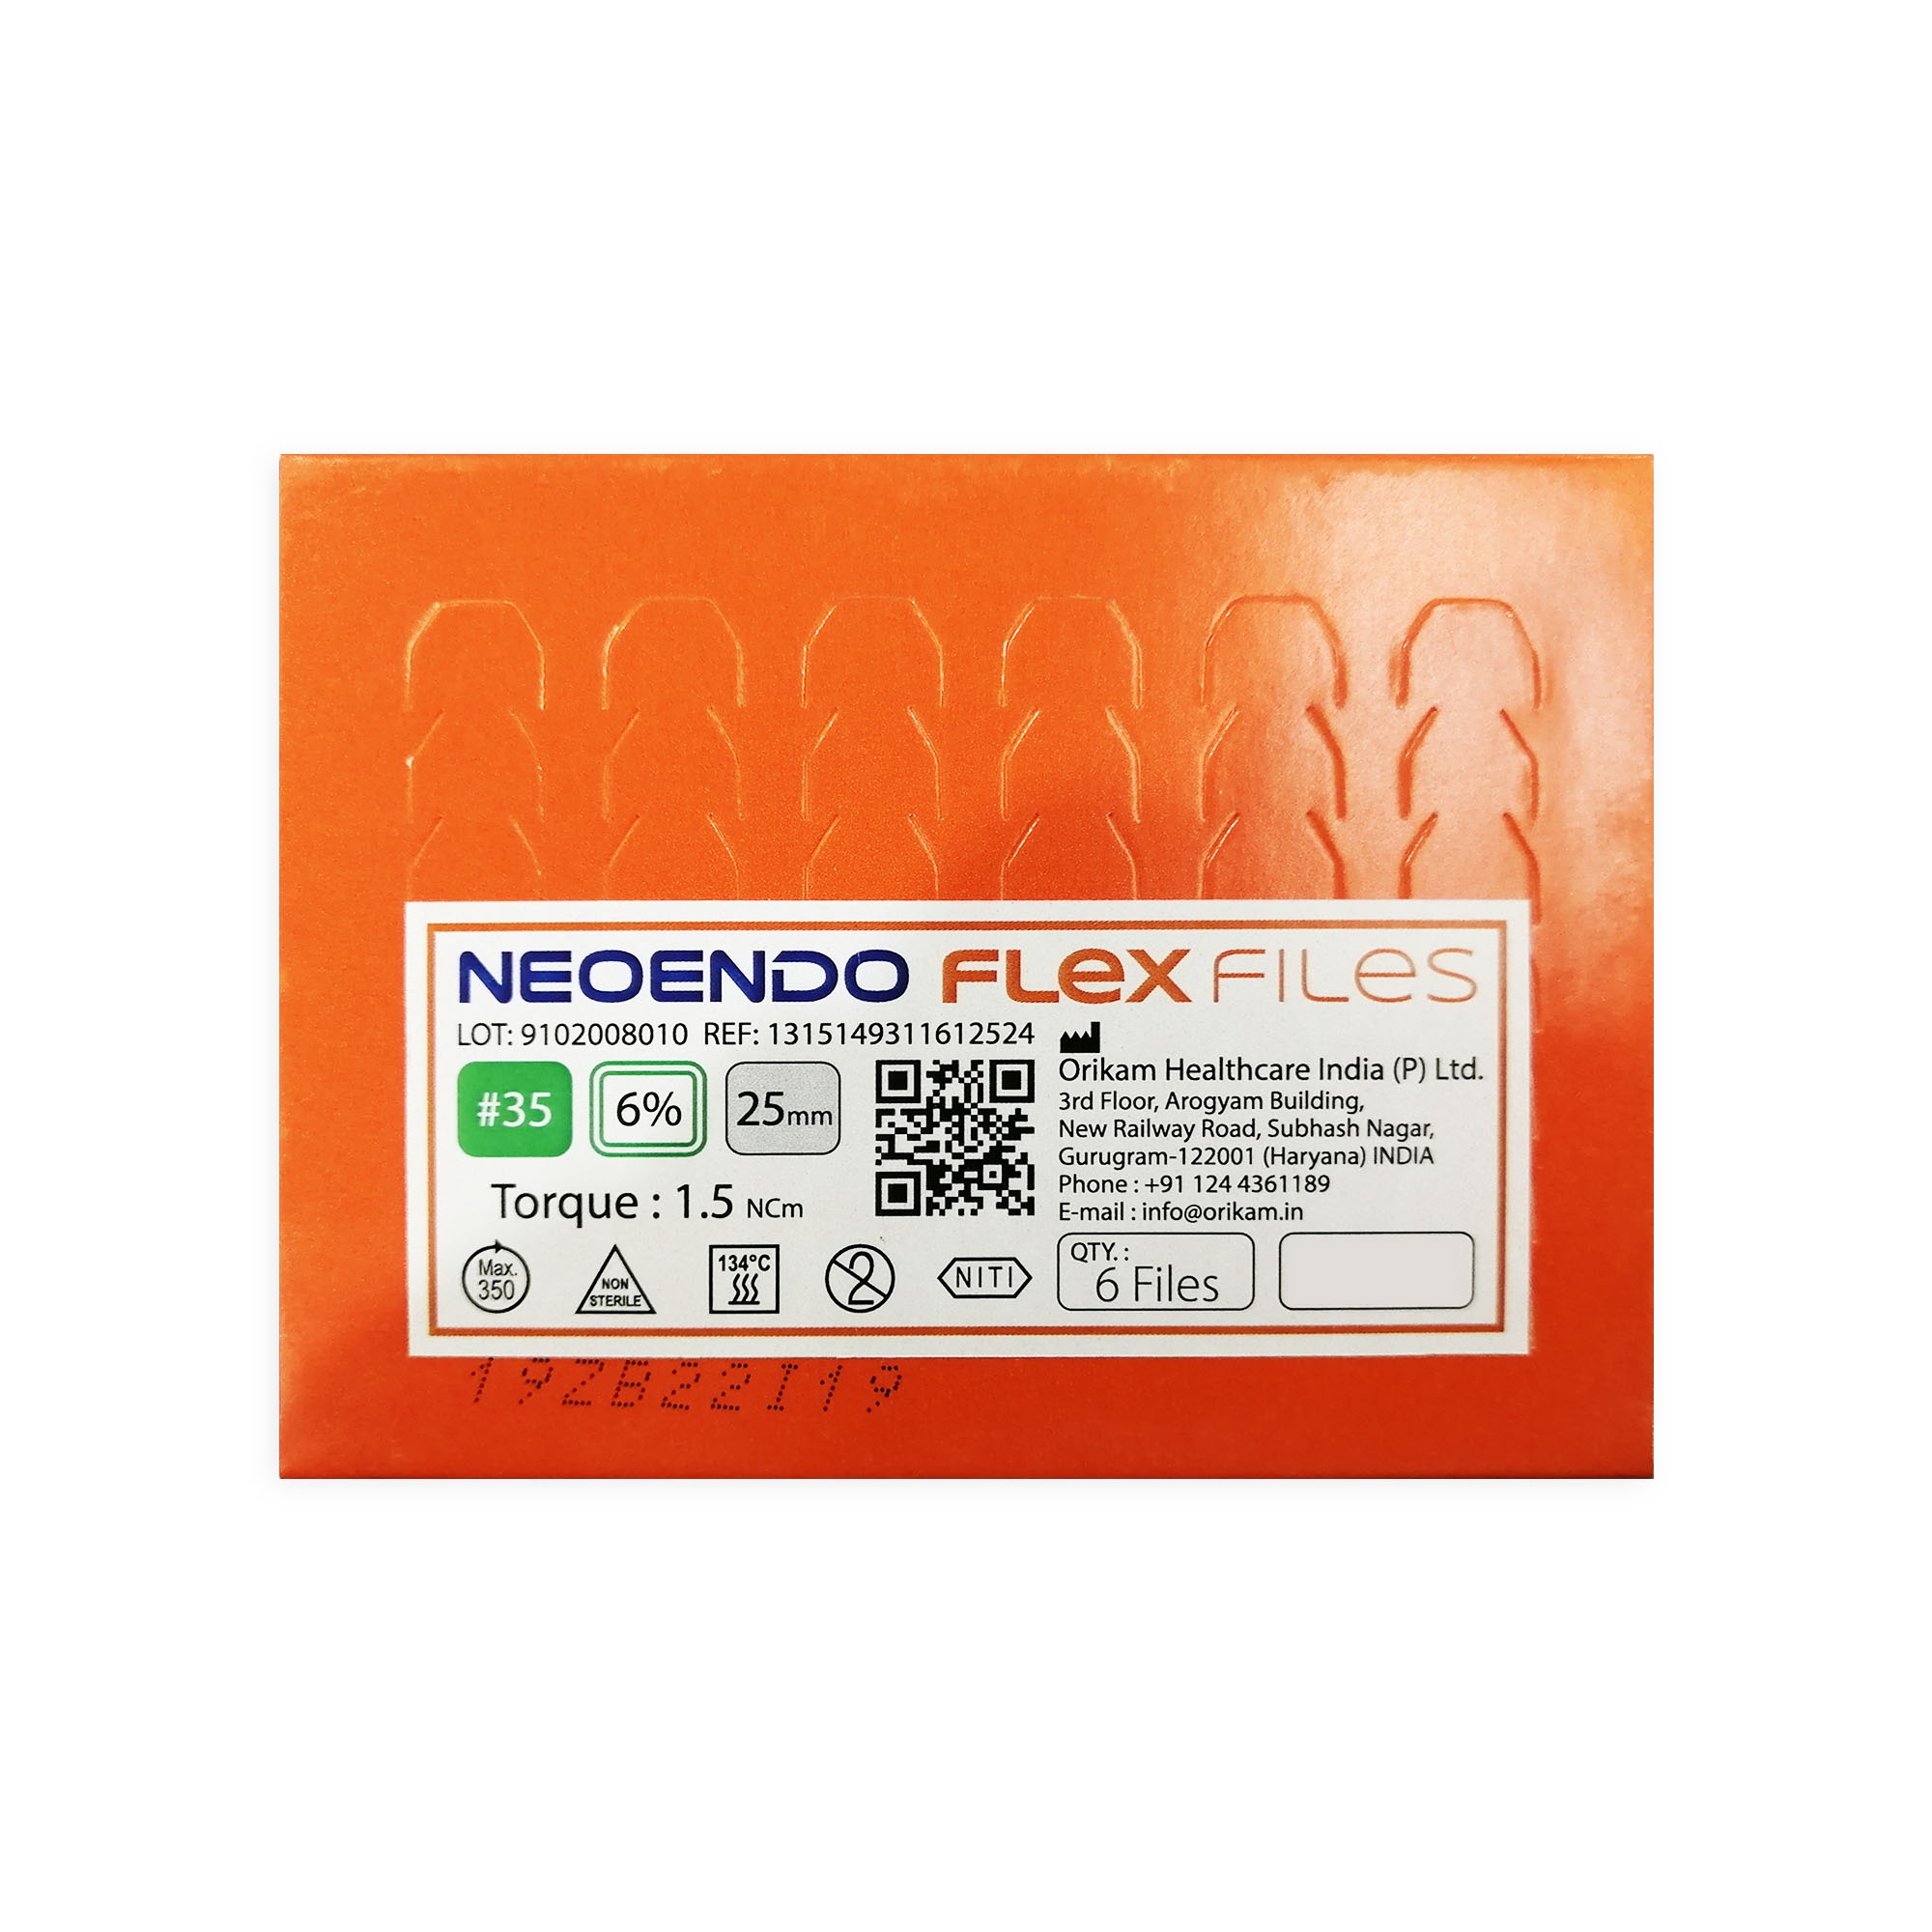 NeoEndo Flex Files 25mm 30/6 Endo Rotary Files